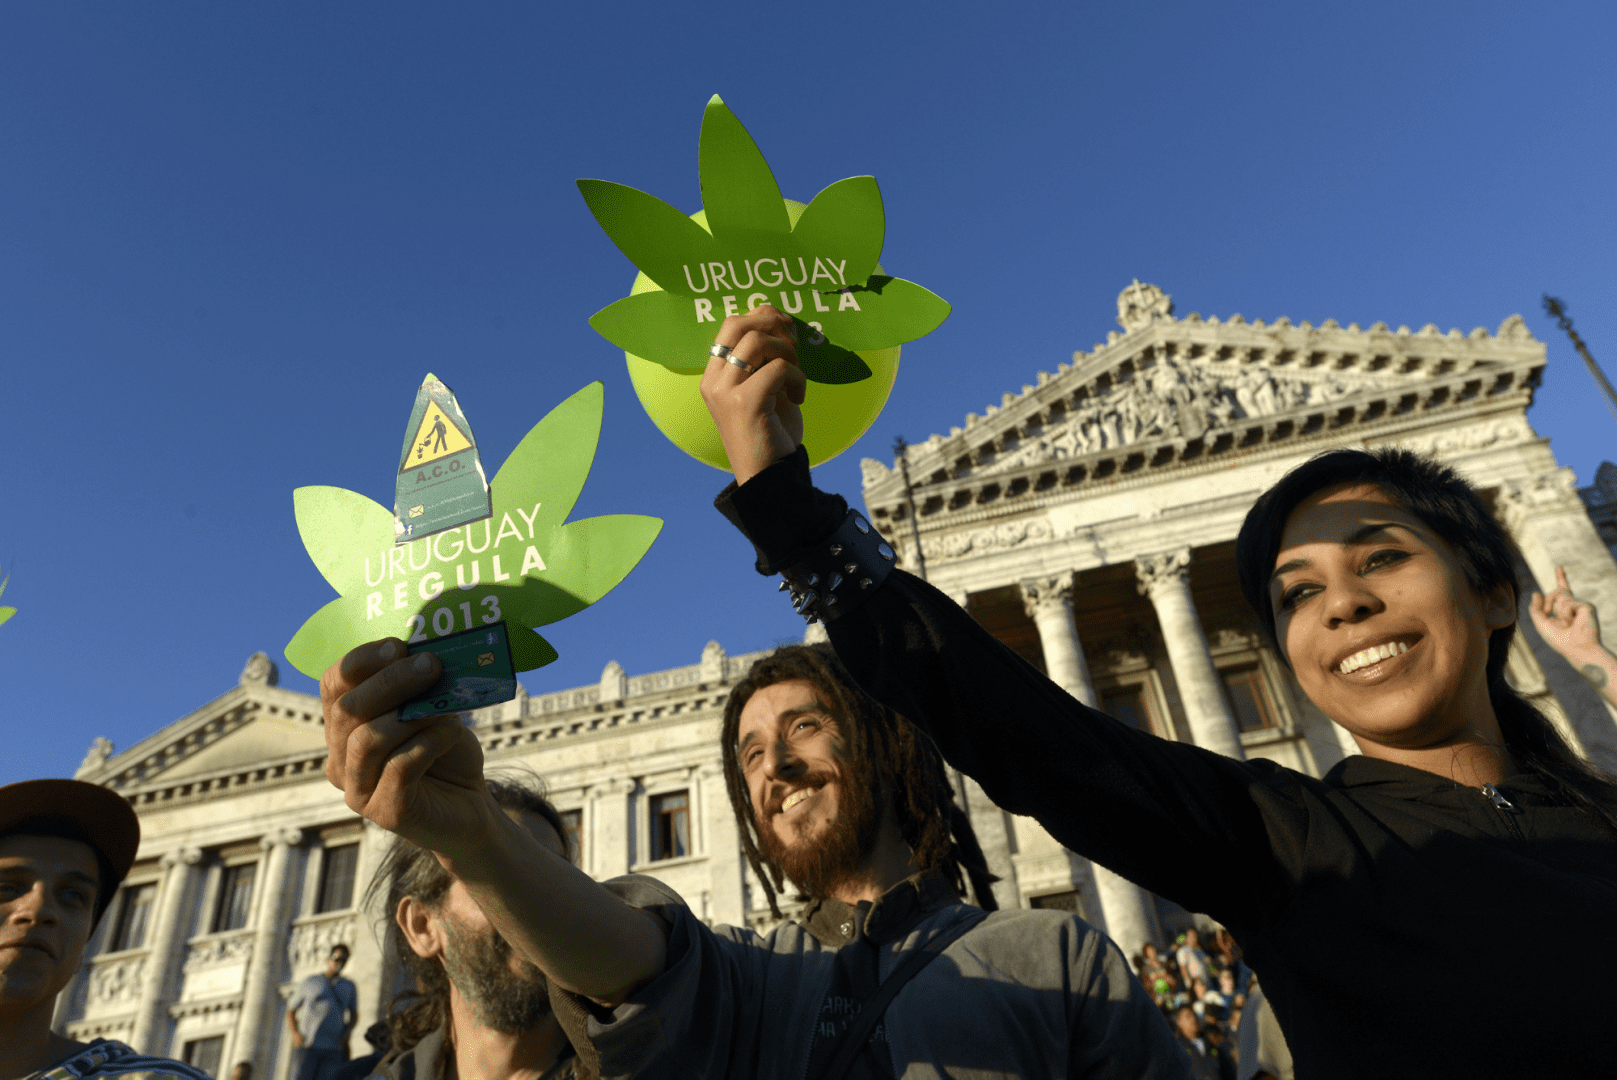 Уругвай марихуану браузер тор скачать на русском последнюю версию гидра